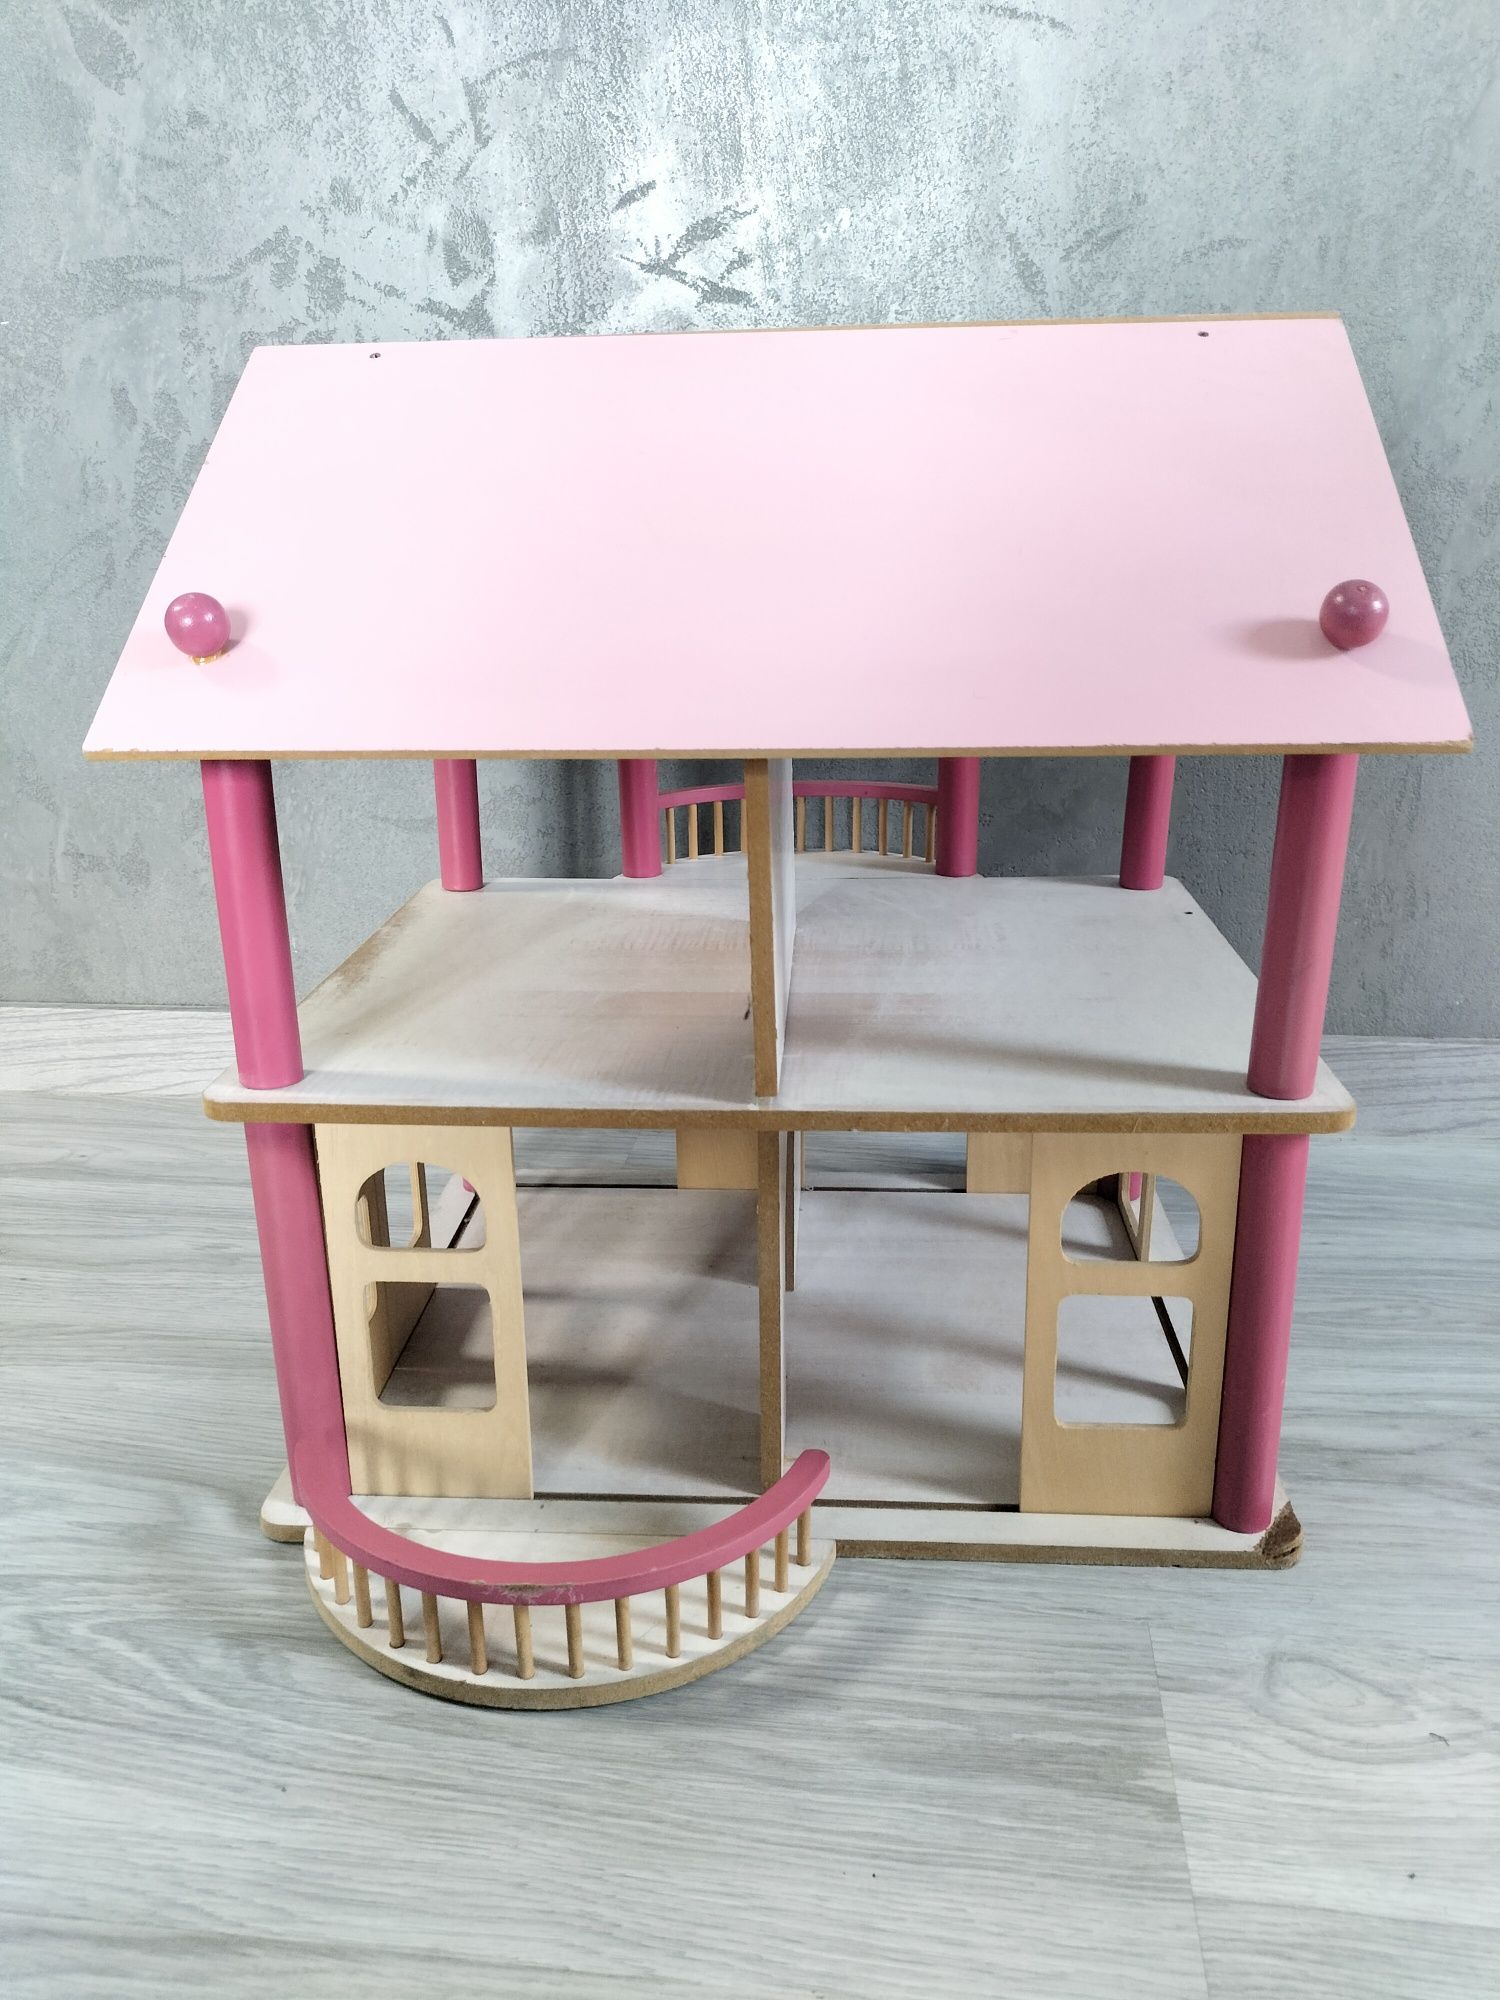 Drewniany domek dla lalek różowy piętrowy przesuwane ścianki balkon